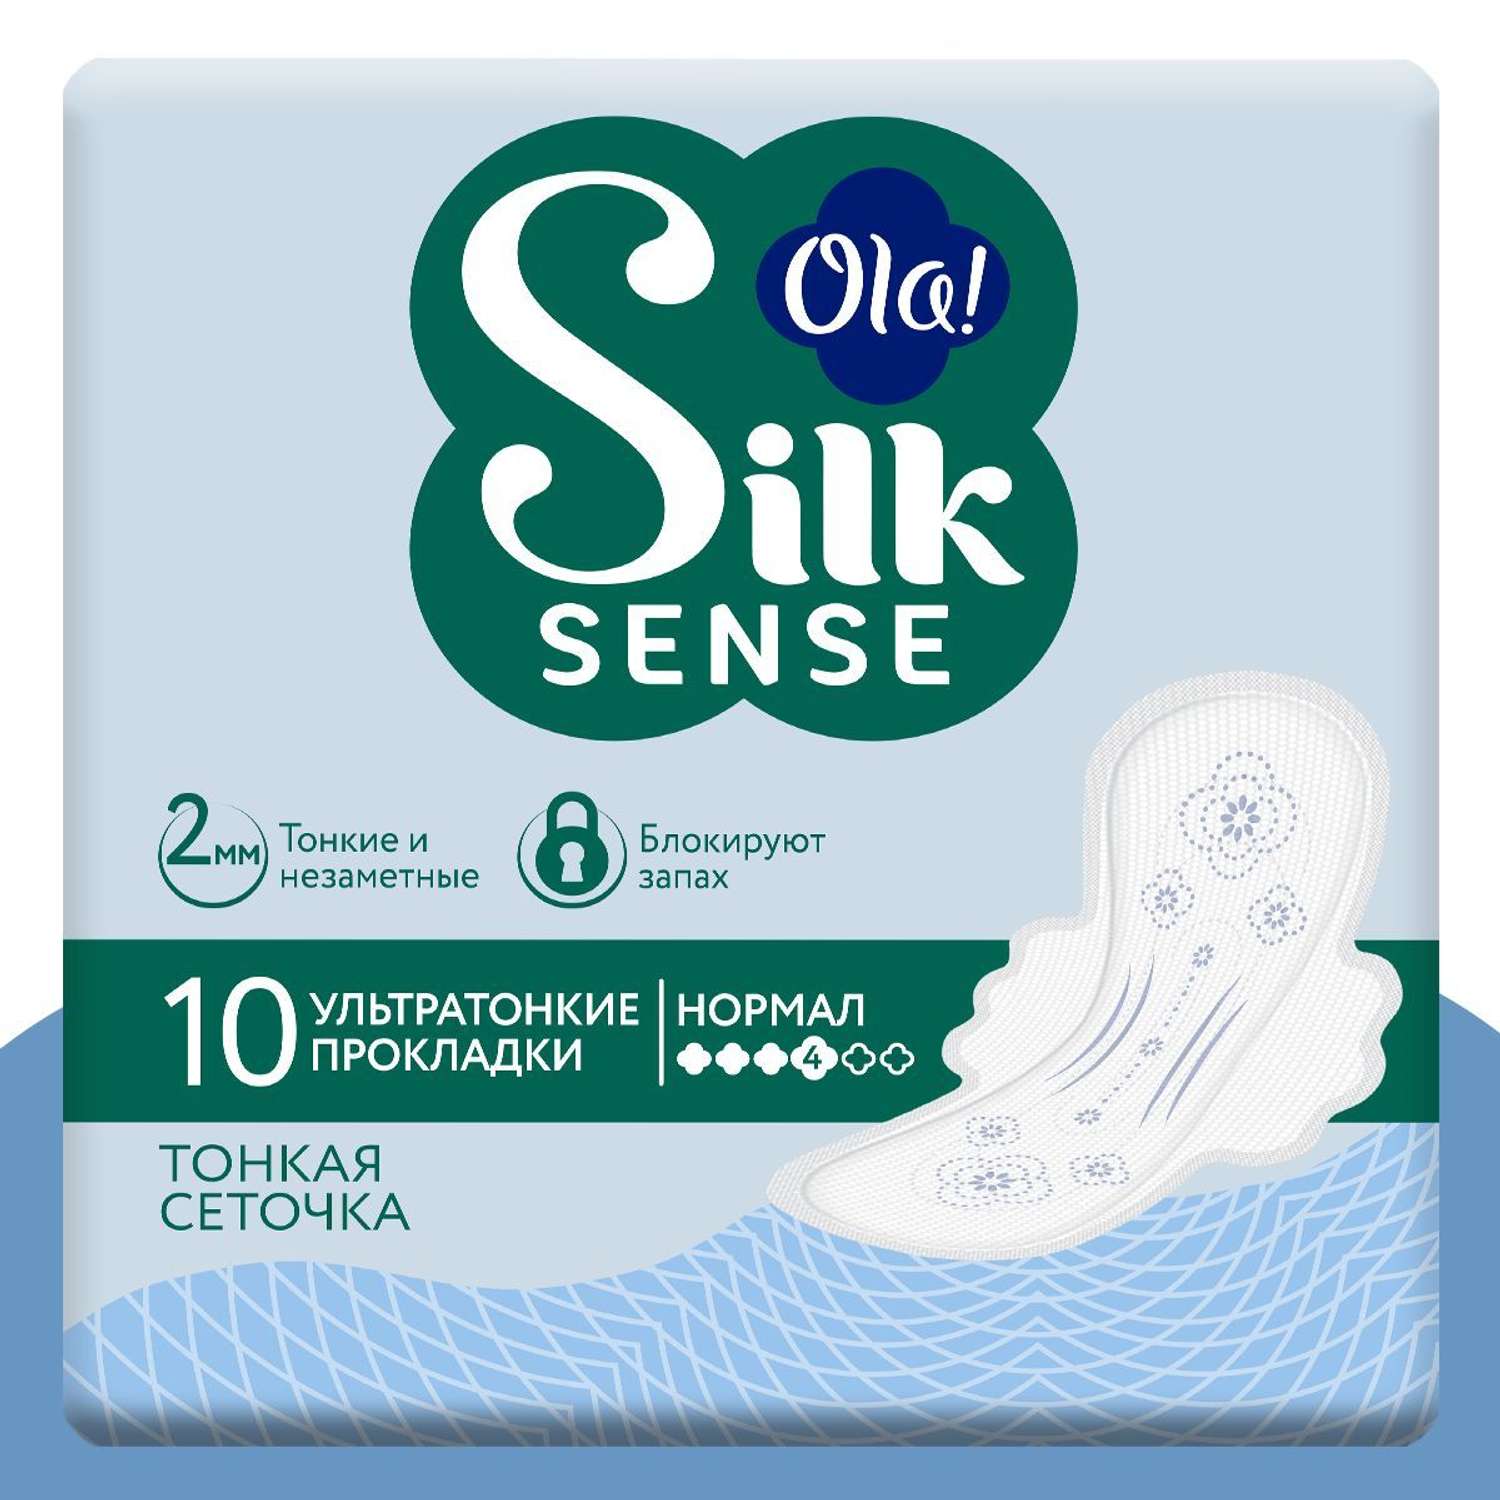 Ультратонкие прокладки Ola! с крылышками Silk Sense Нормал поверхность сеточка без аромата 40 шт 4 уп по 8 шт - фото 2